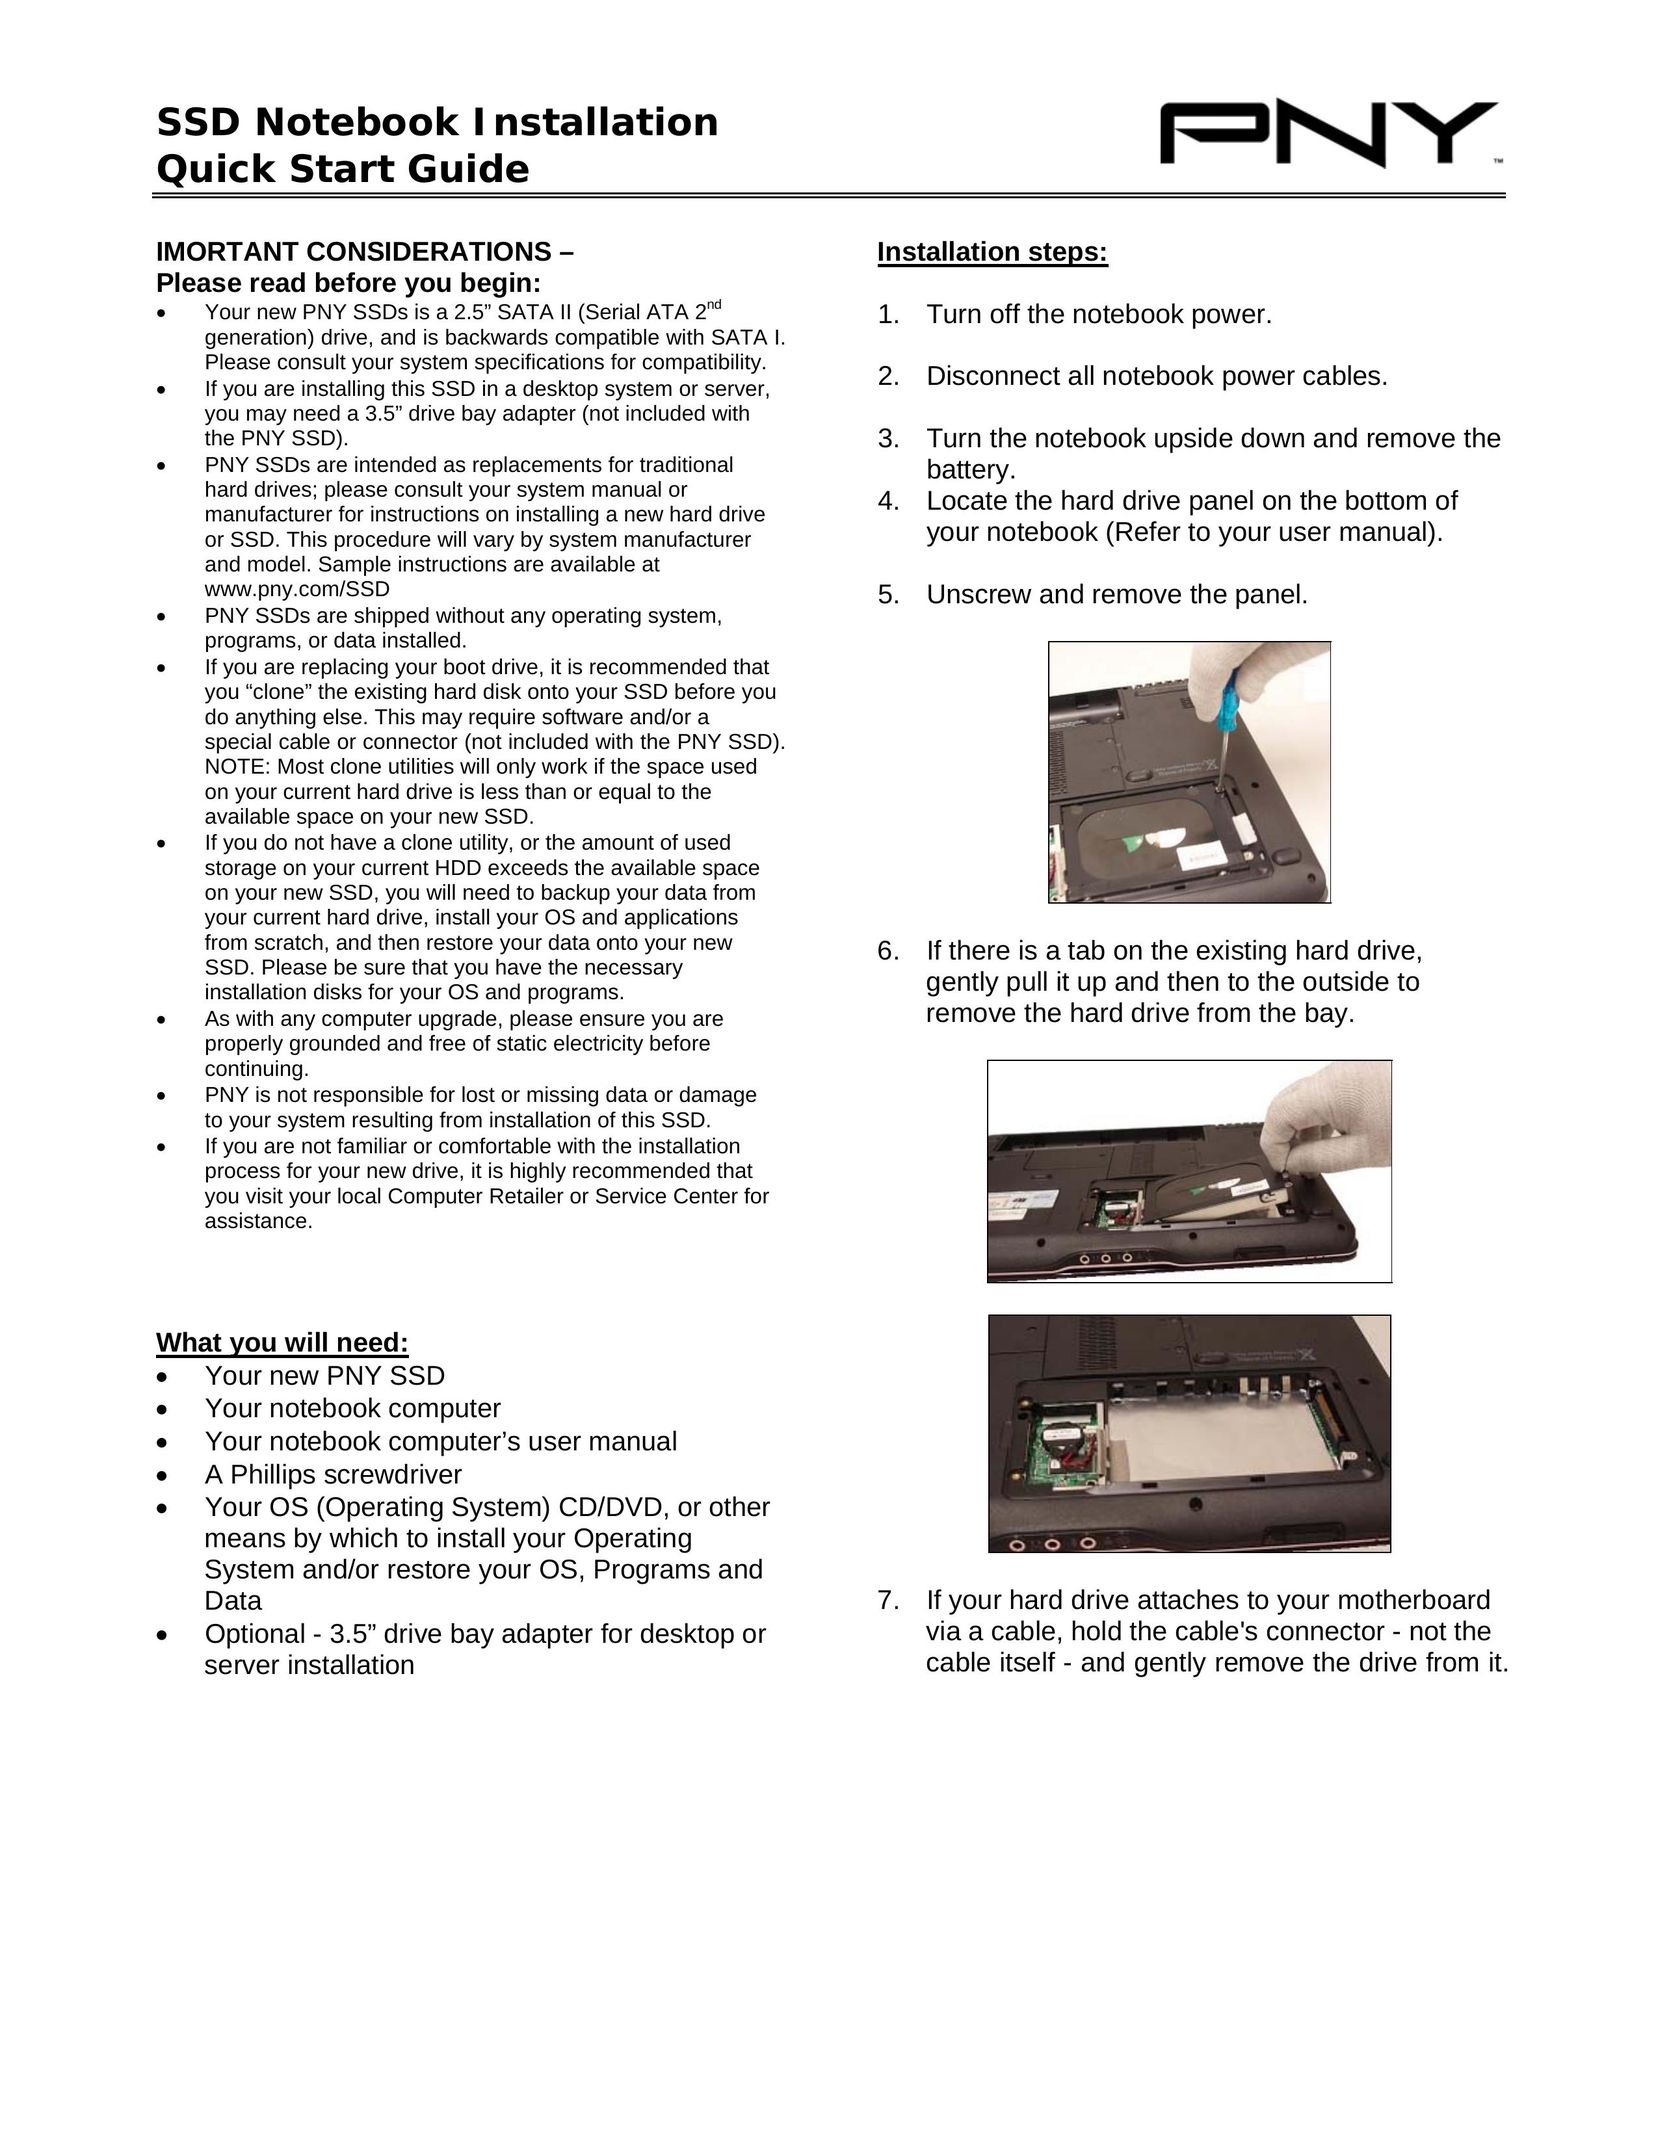 PNY SSD Laptop User Manual